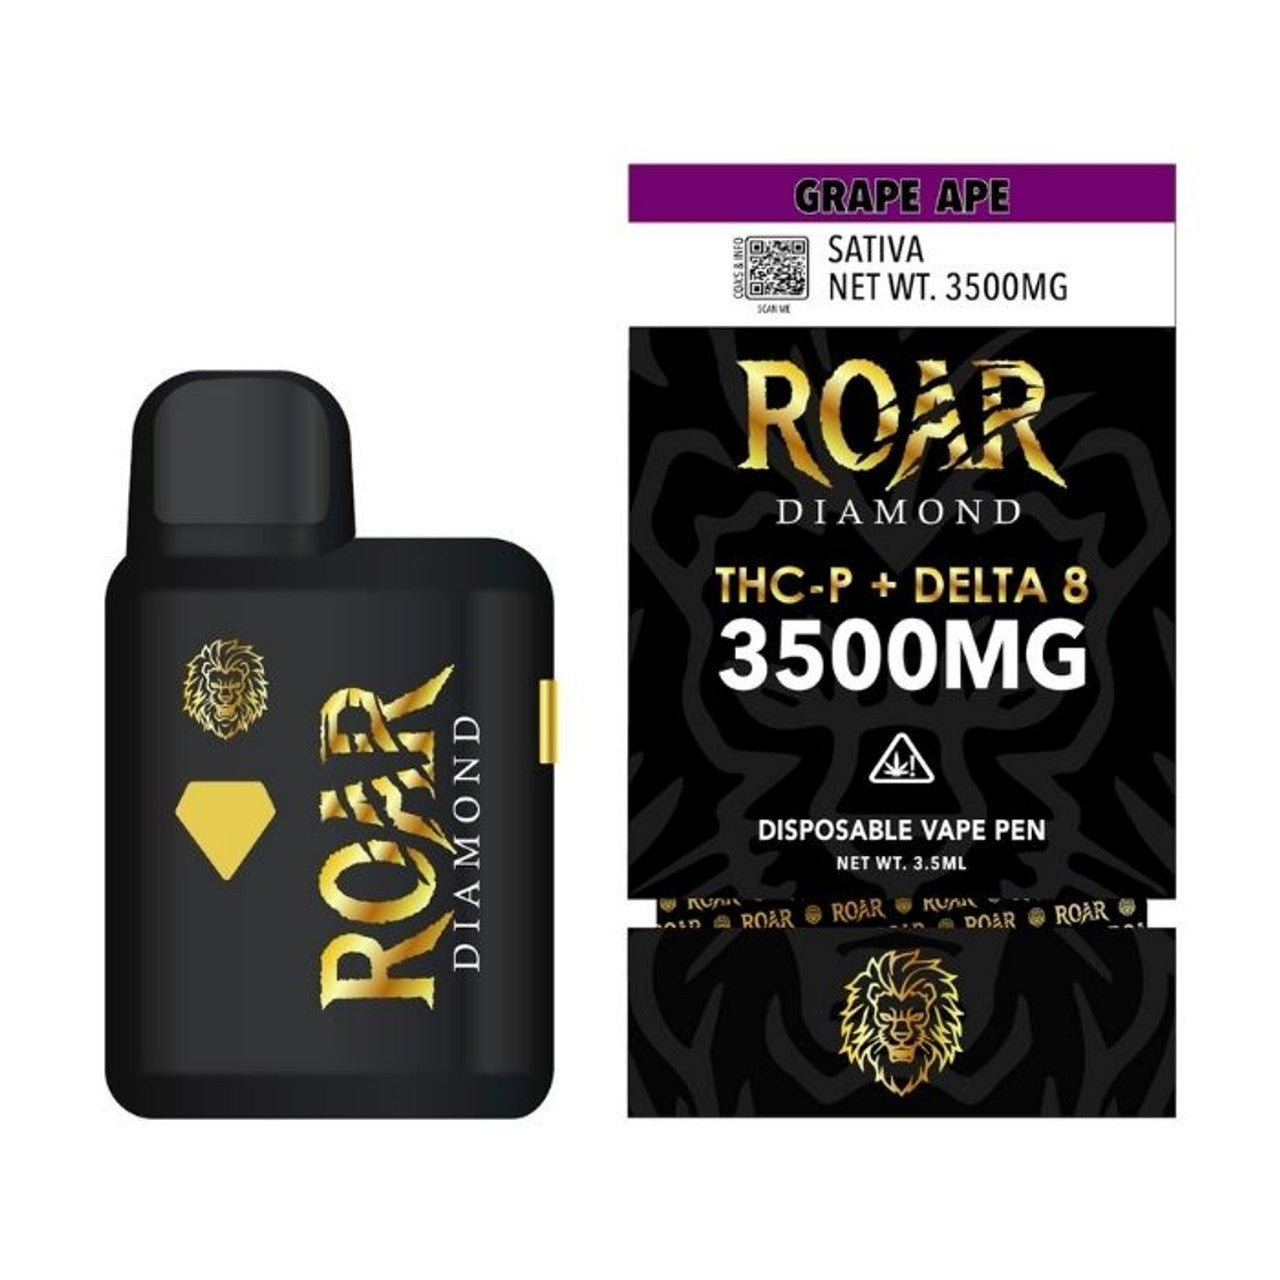 Roar Diamond 3.5g Disposable Vape Wholesale – 1 Box / 5 pcs